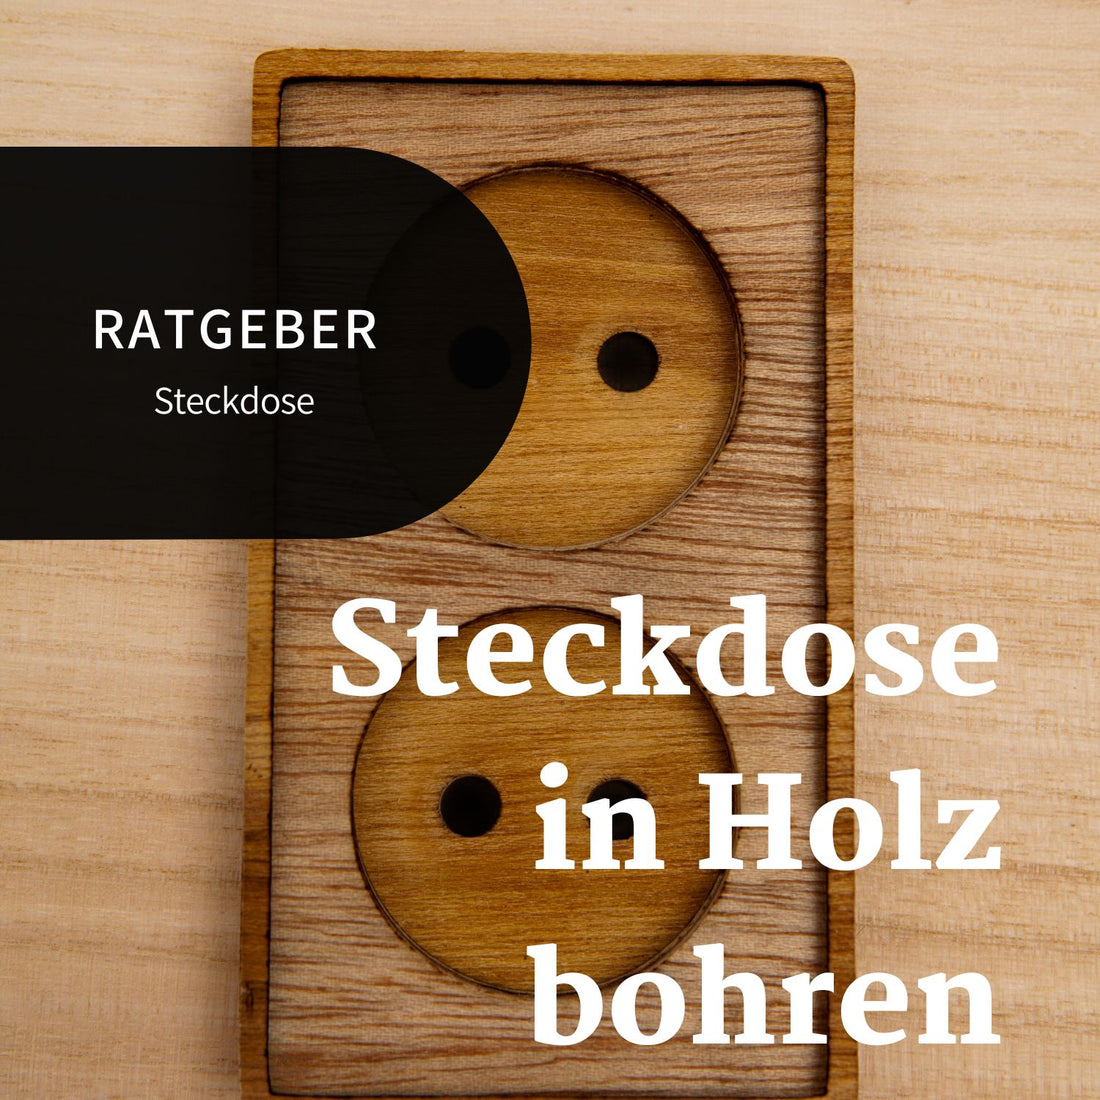 Steckdosen Bohren in Holz - Bannerbild